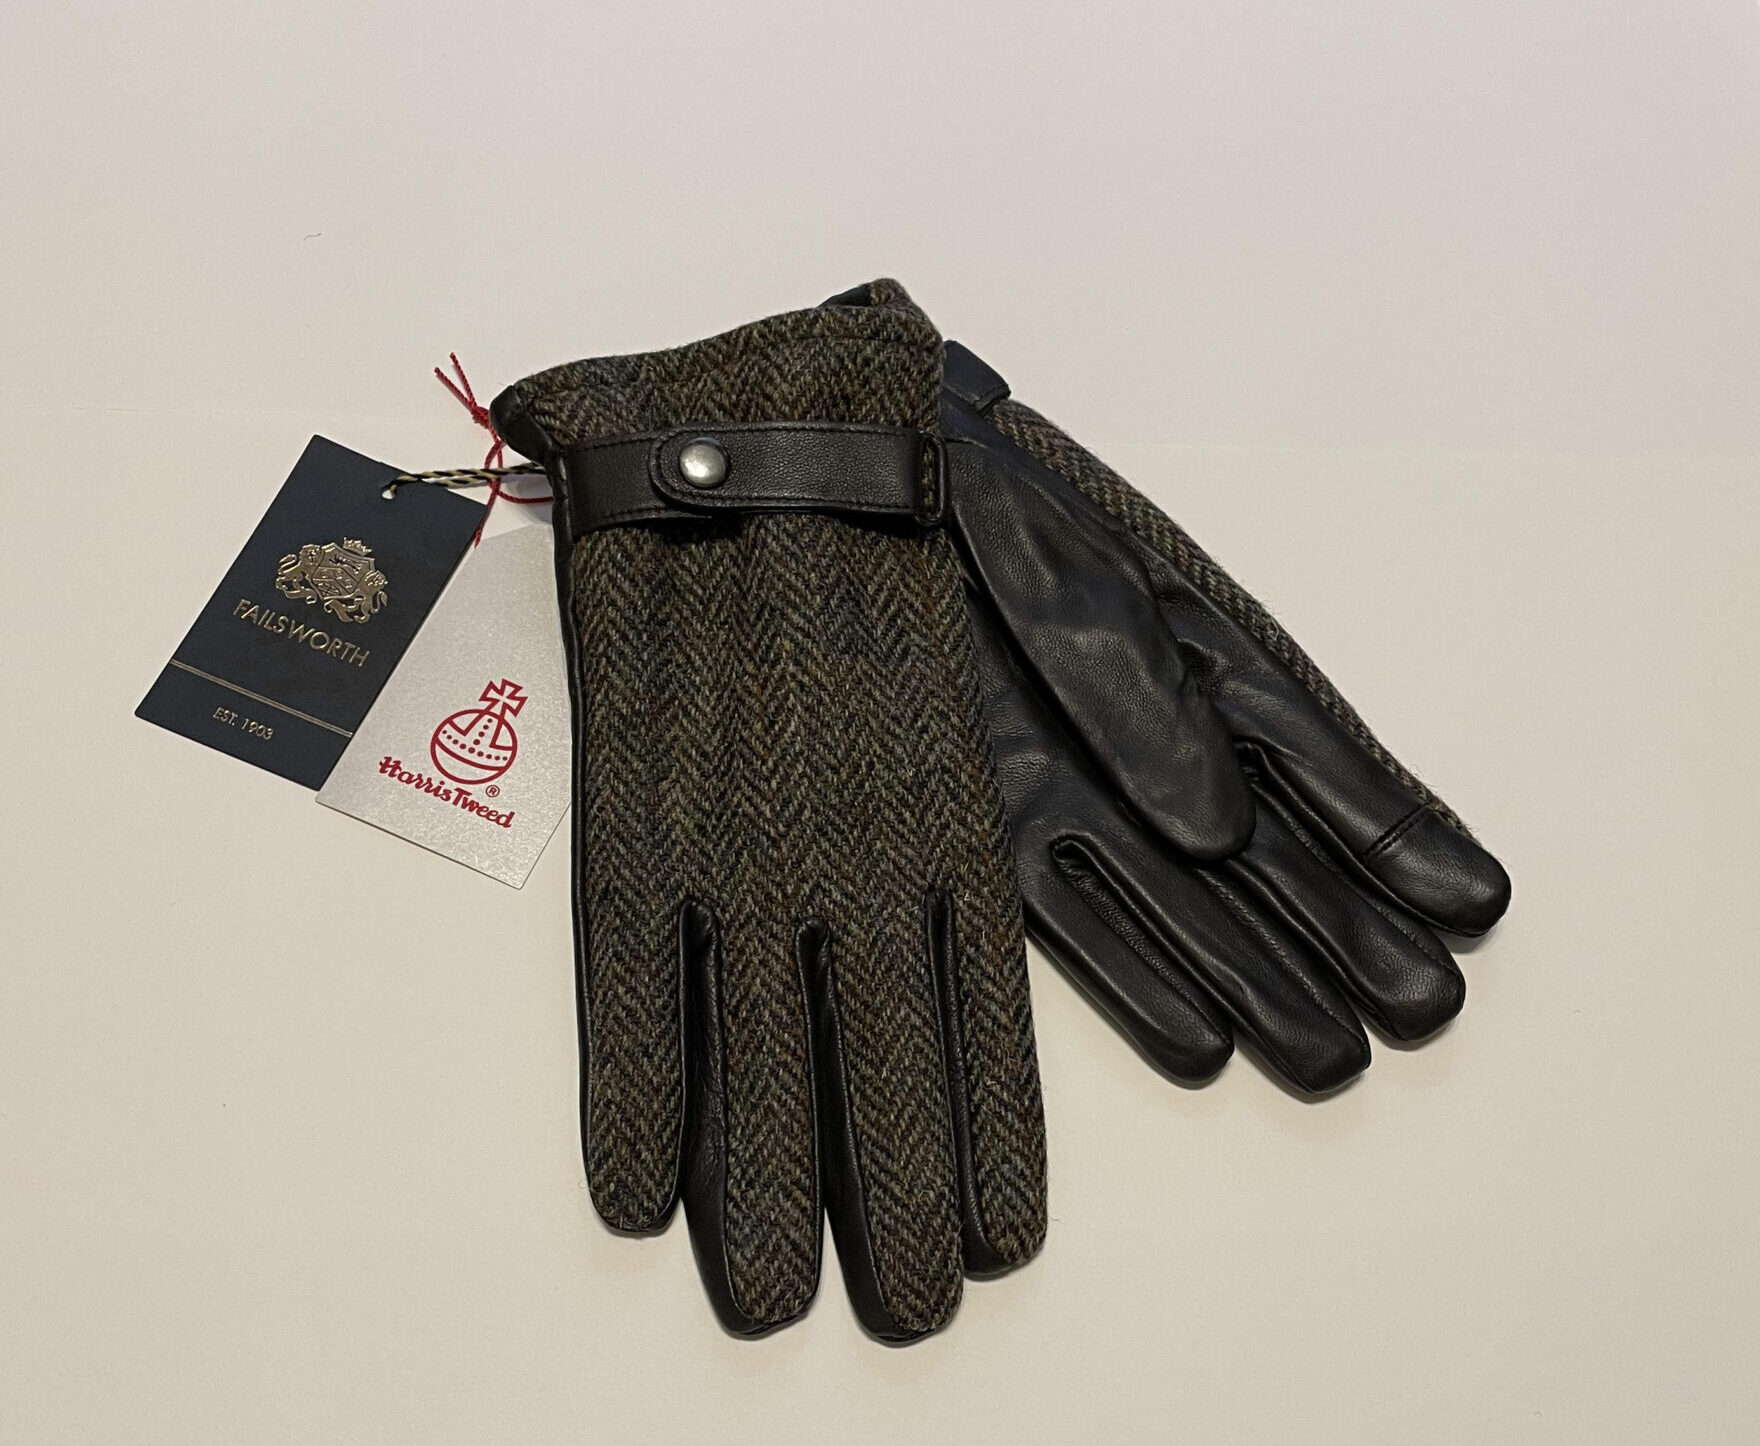 Harris Tweed Gloves – Parkins School & Menswear